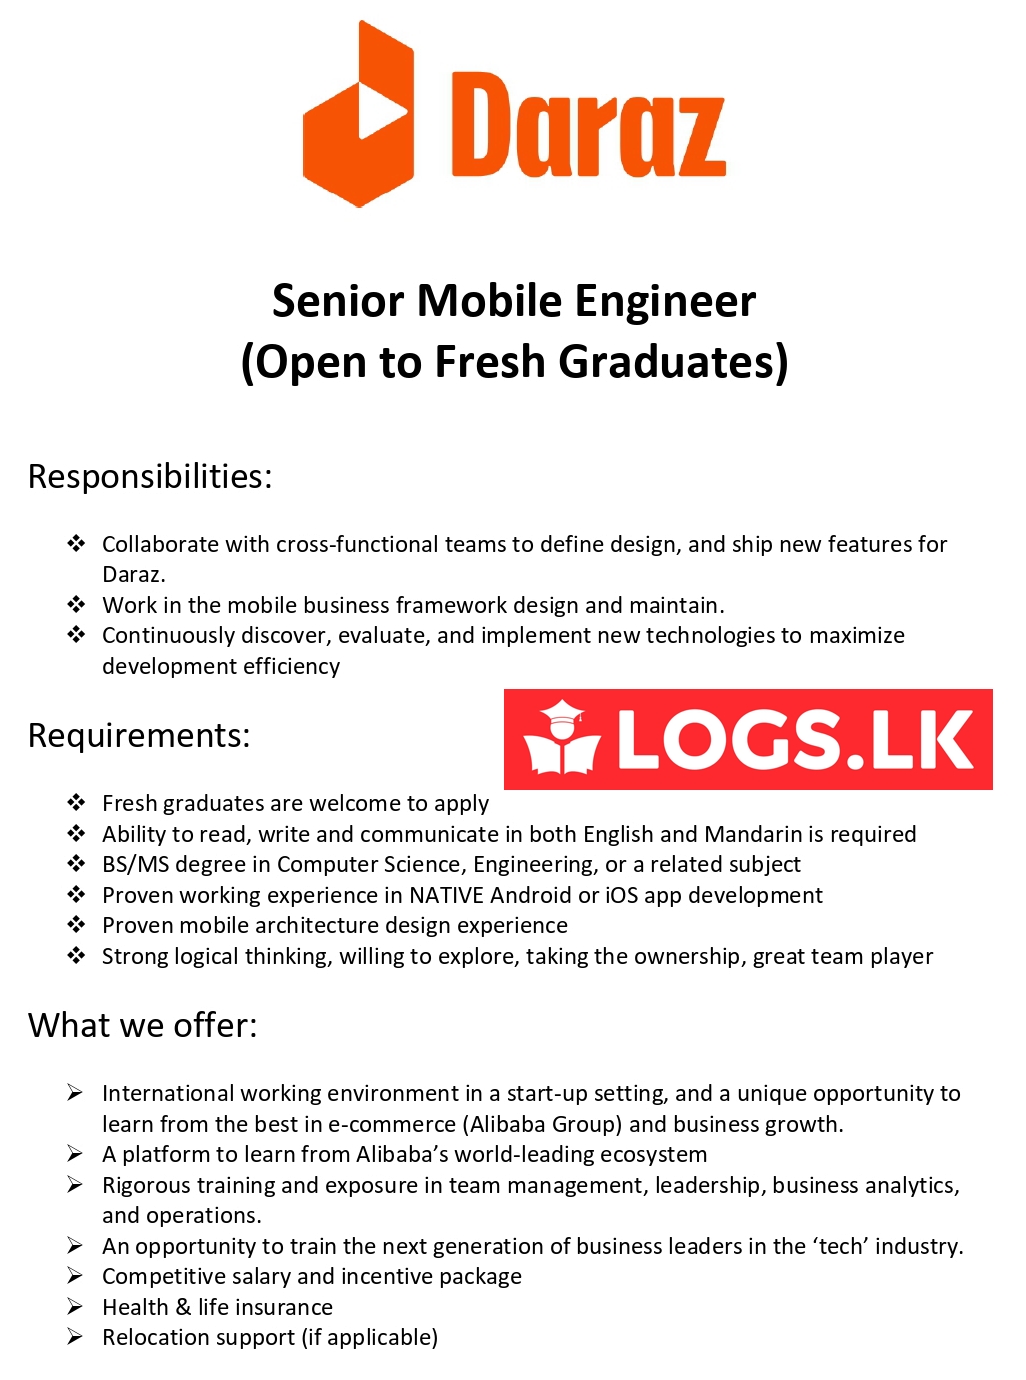 Senior Mobile Engineer Job Vacancy - Daraz Sri Lanka Jobs Vacancies